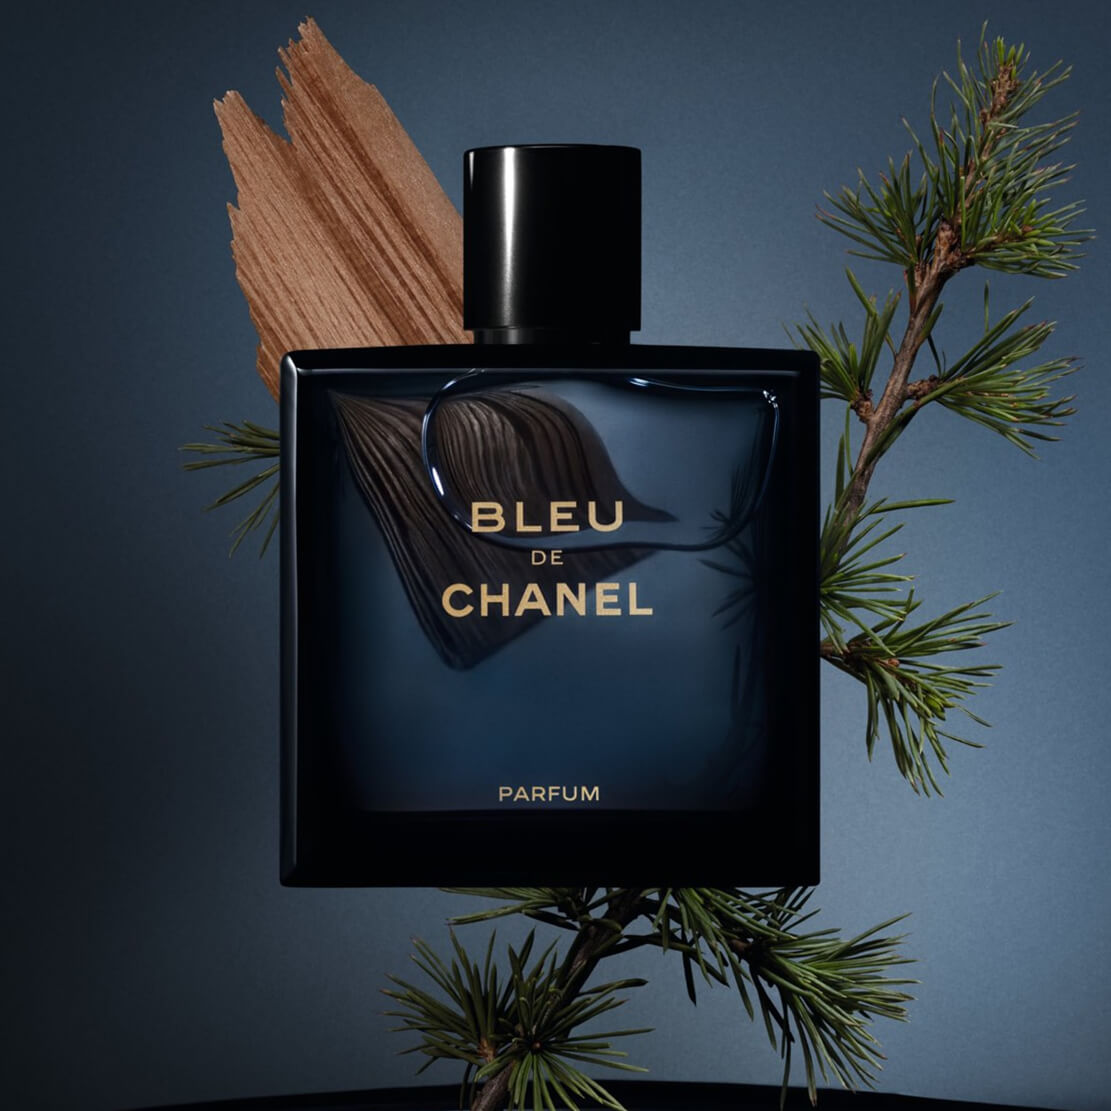 Bleu de chanel Parfum 100ml, Beauty & Personal Care, Fragrance